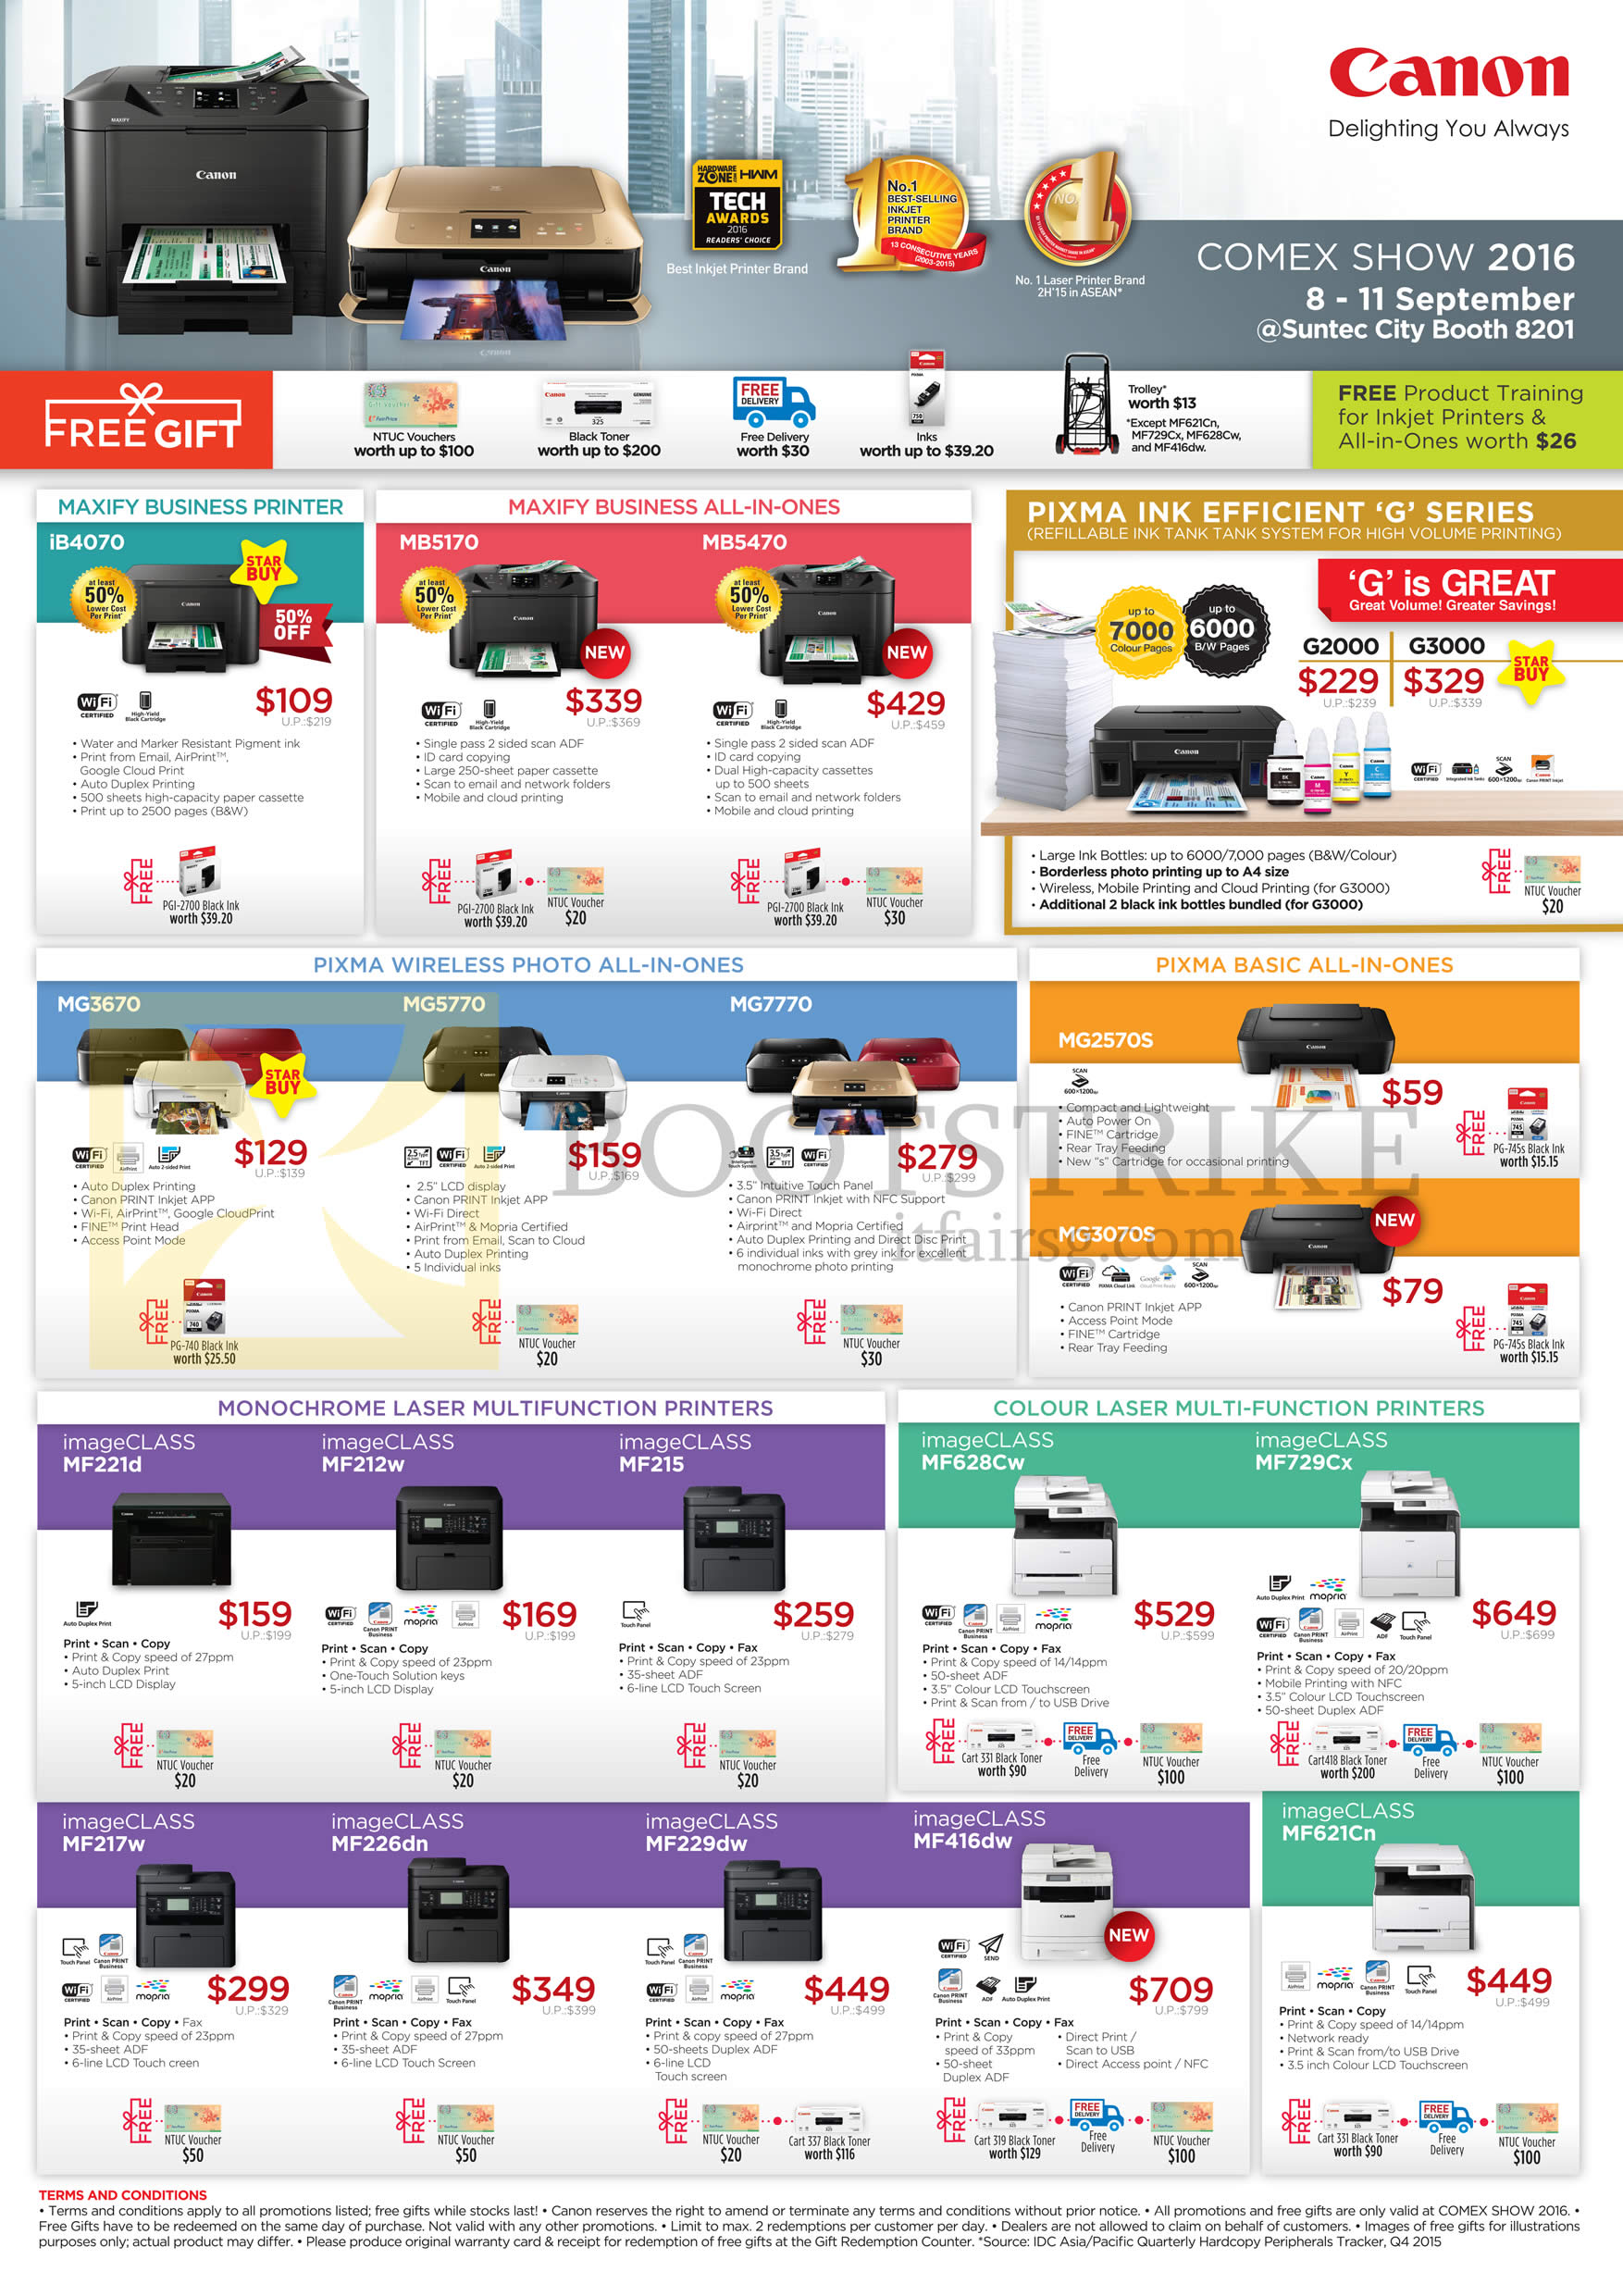 COMEX 2016 price list image brochure of Canon Printers Inkjet IB4070, MB5170, 5470, MG3670, 5770, 7770, ImageCLASS MF221d, MF212w, MF215, MF217w, MF226dn, MF229dw, MF416dw, MF621dn, MF628Cw